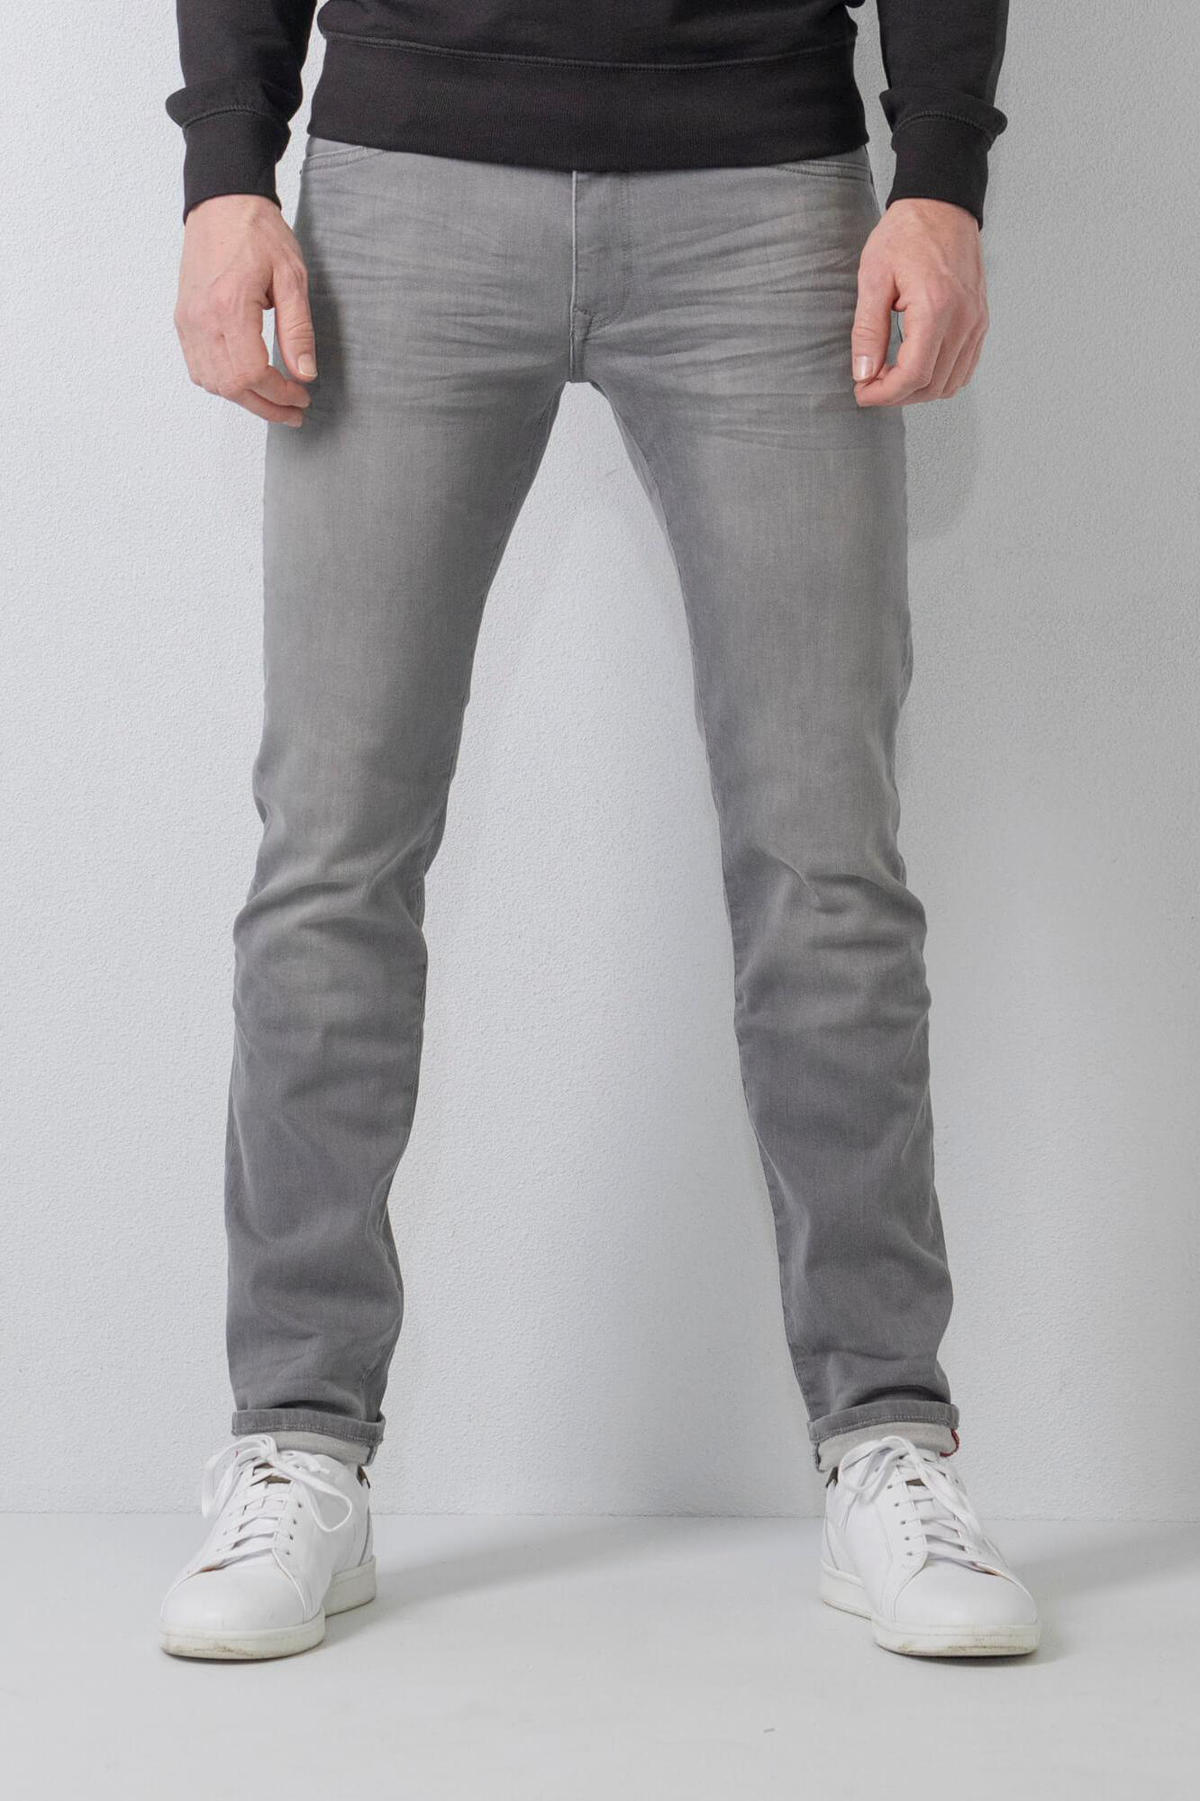 kaping haak kogel Petrol Industries slim fit jeans Seaham Classic met riem grey | wehkamp